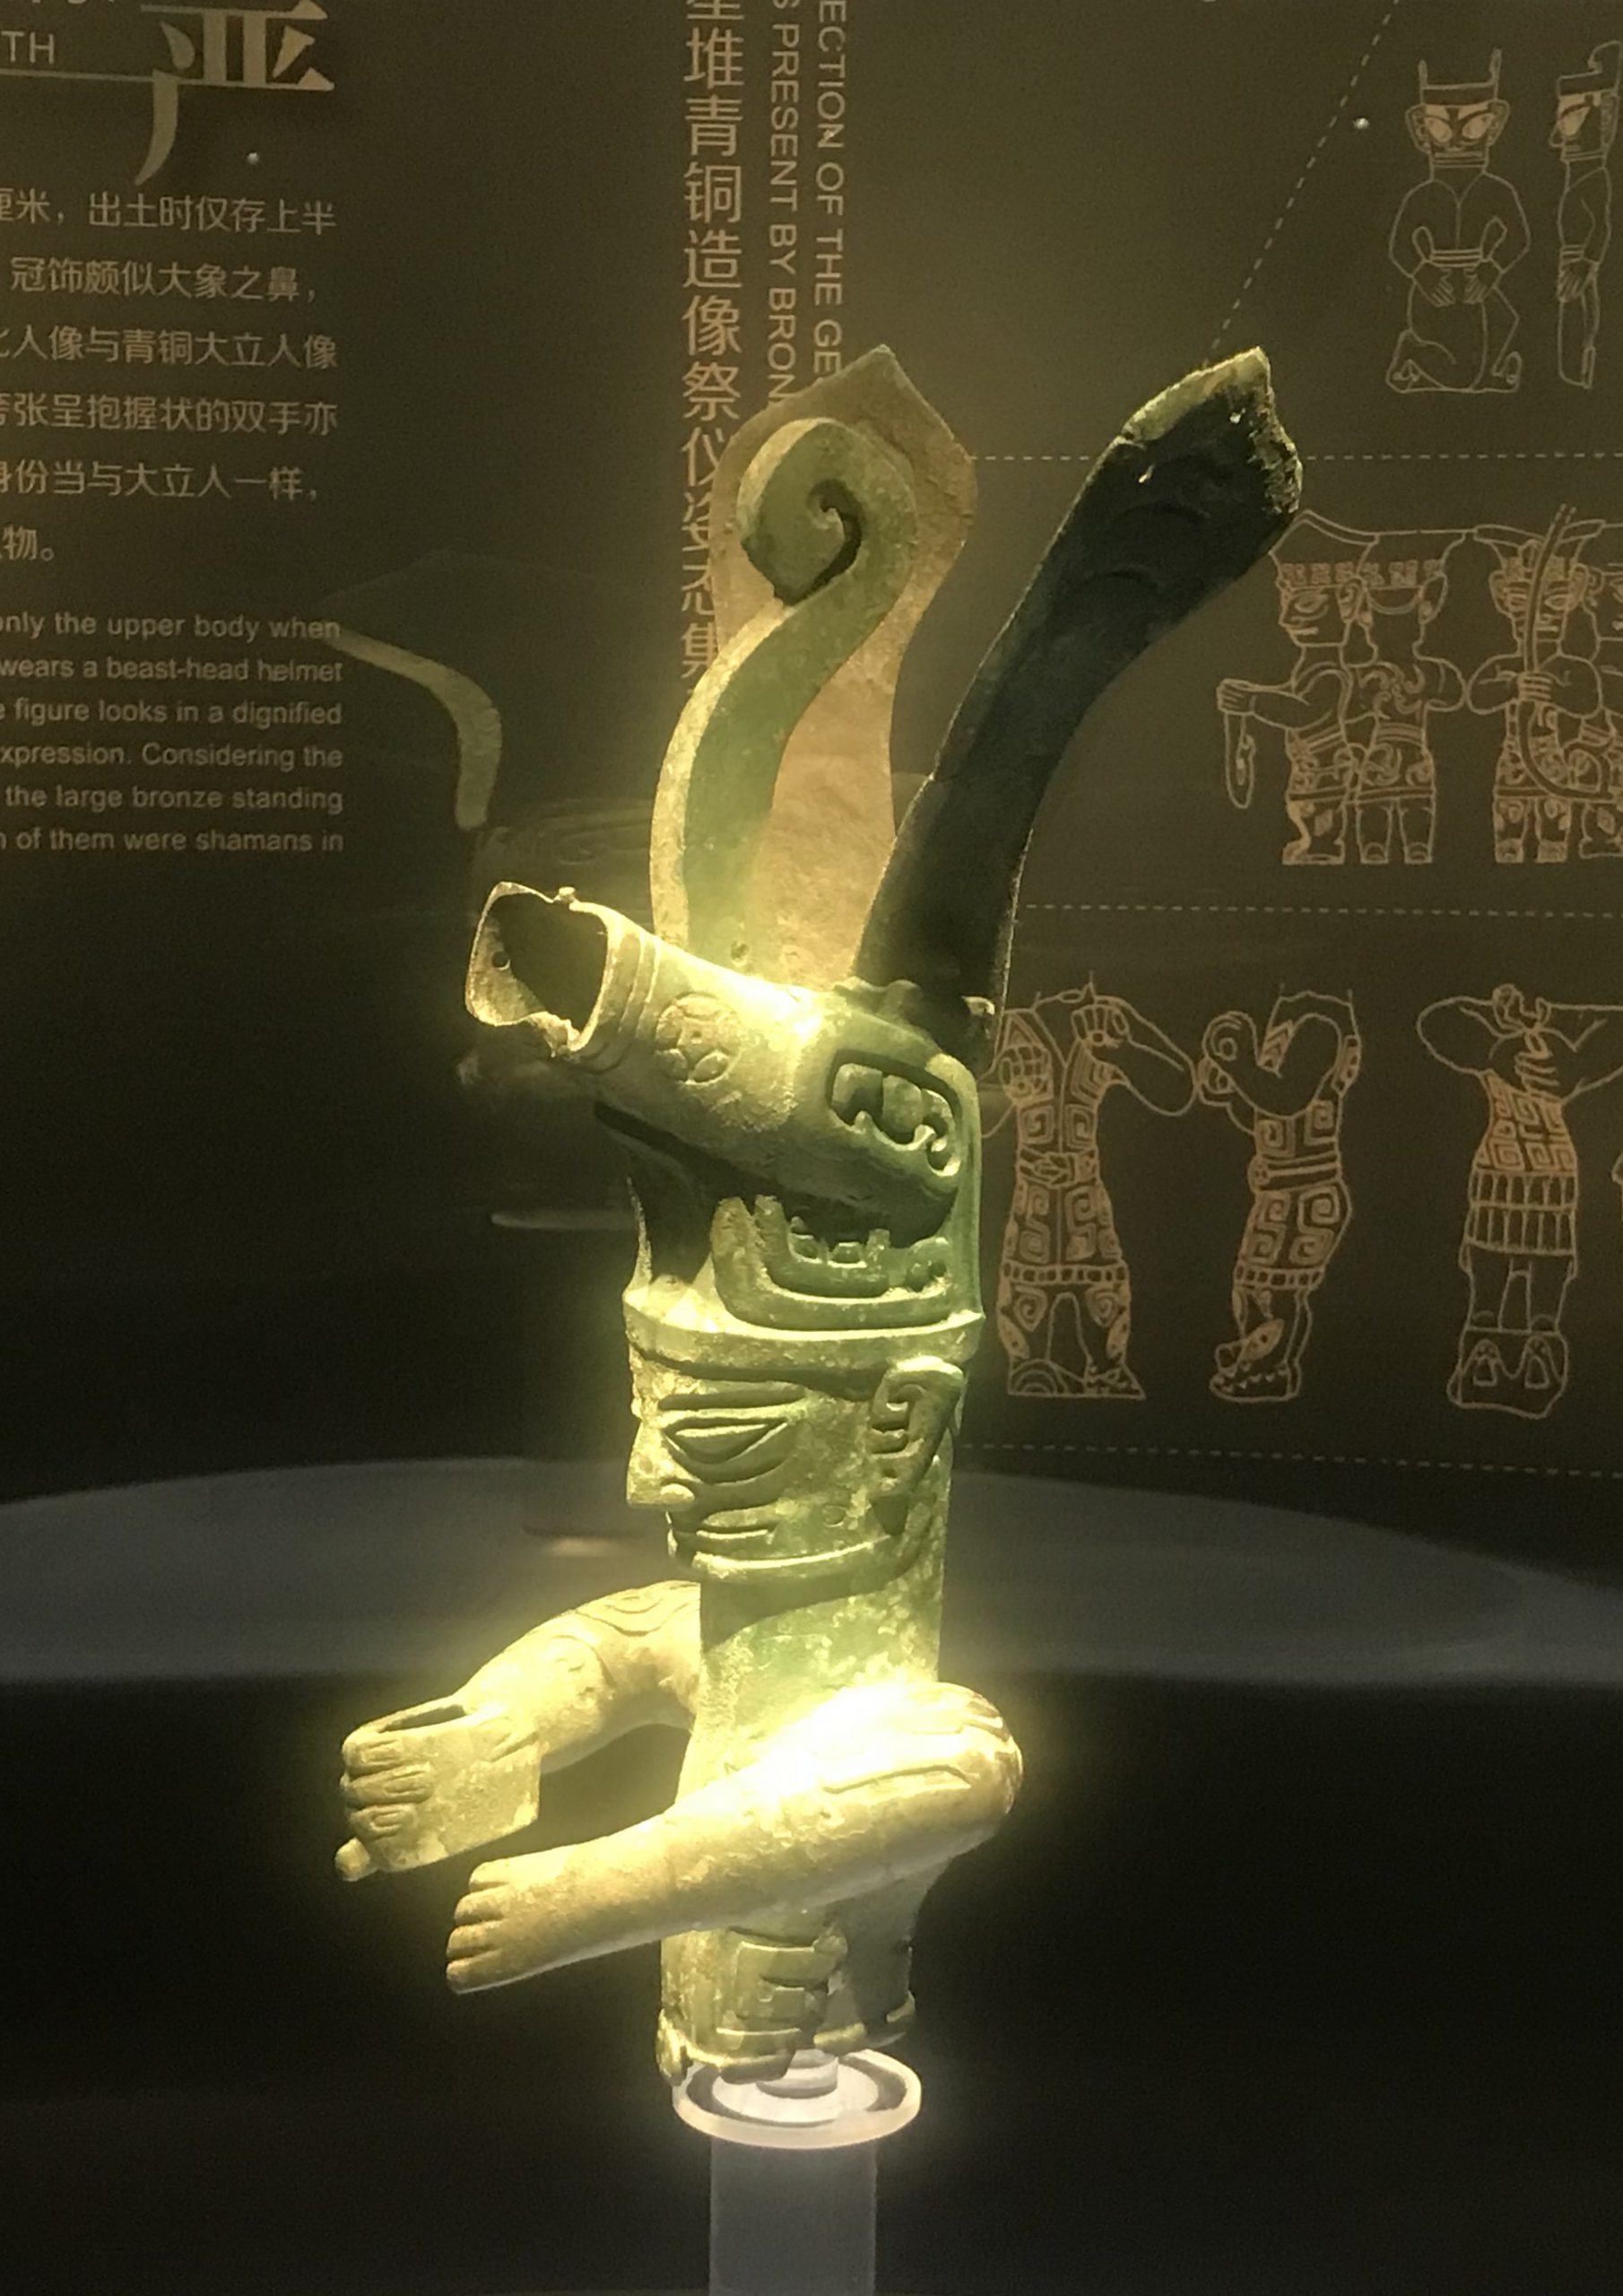 獣冠人物像-青銅器館-三星堆博物館-広漢市-徳陽市-四川省